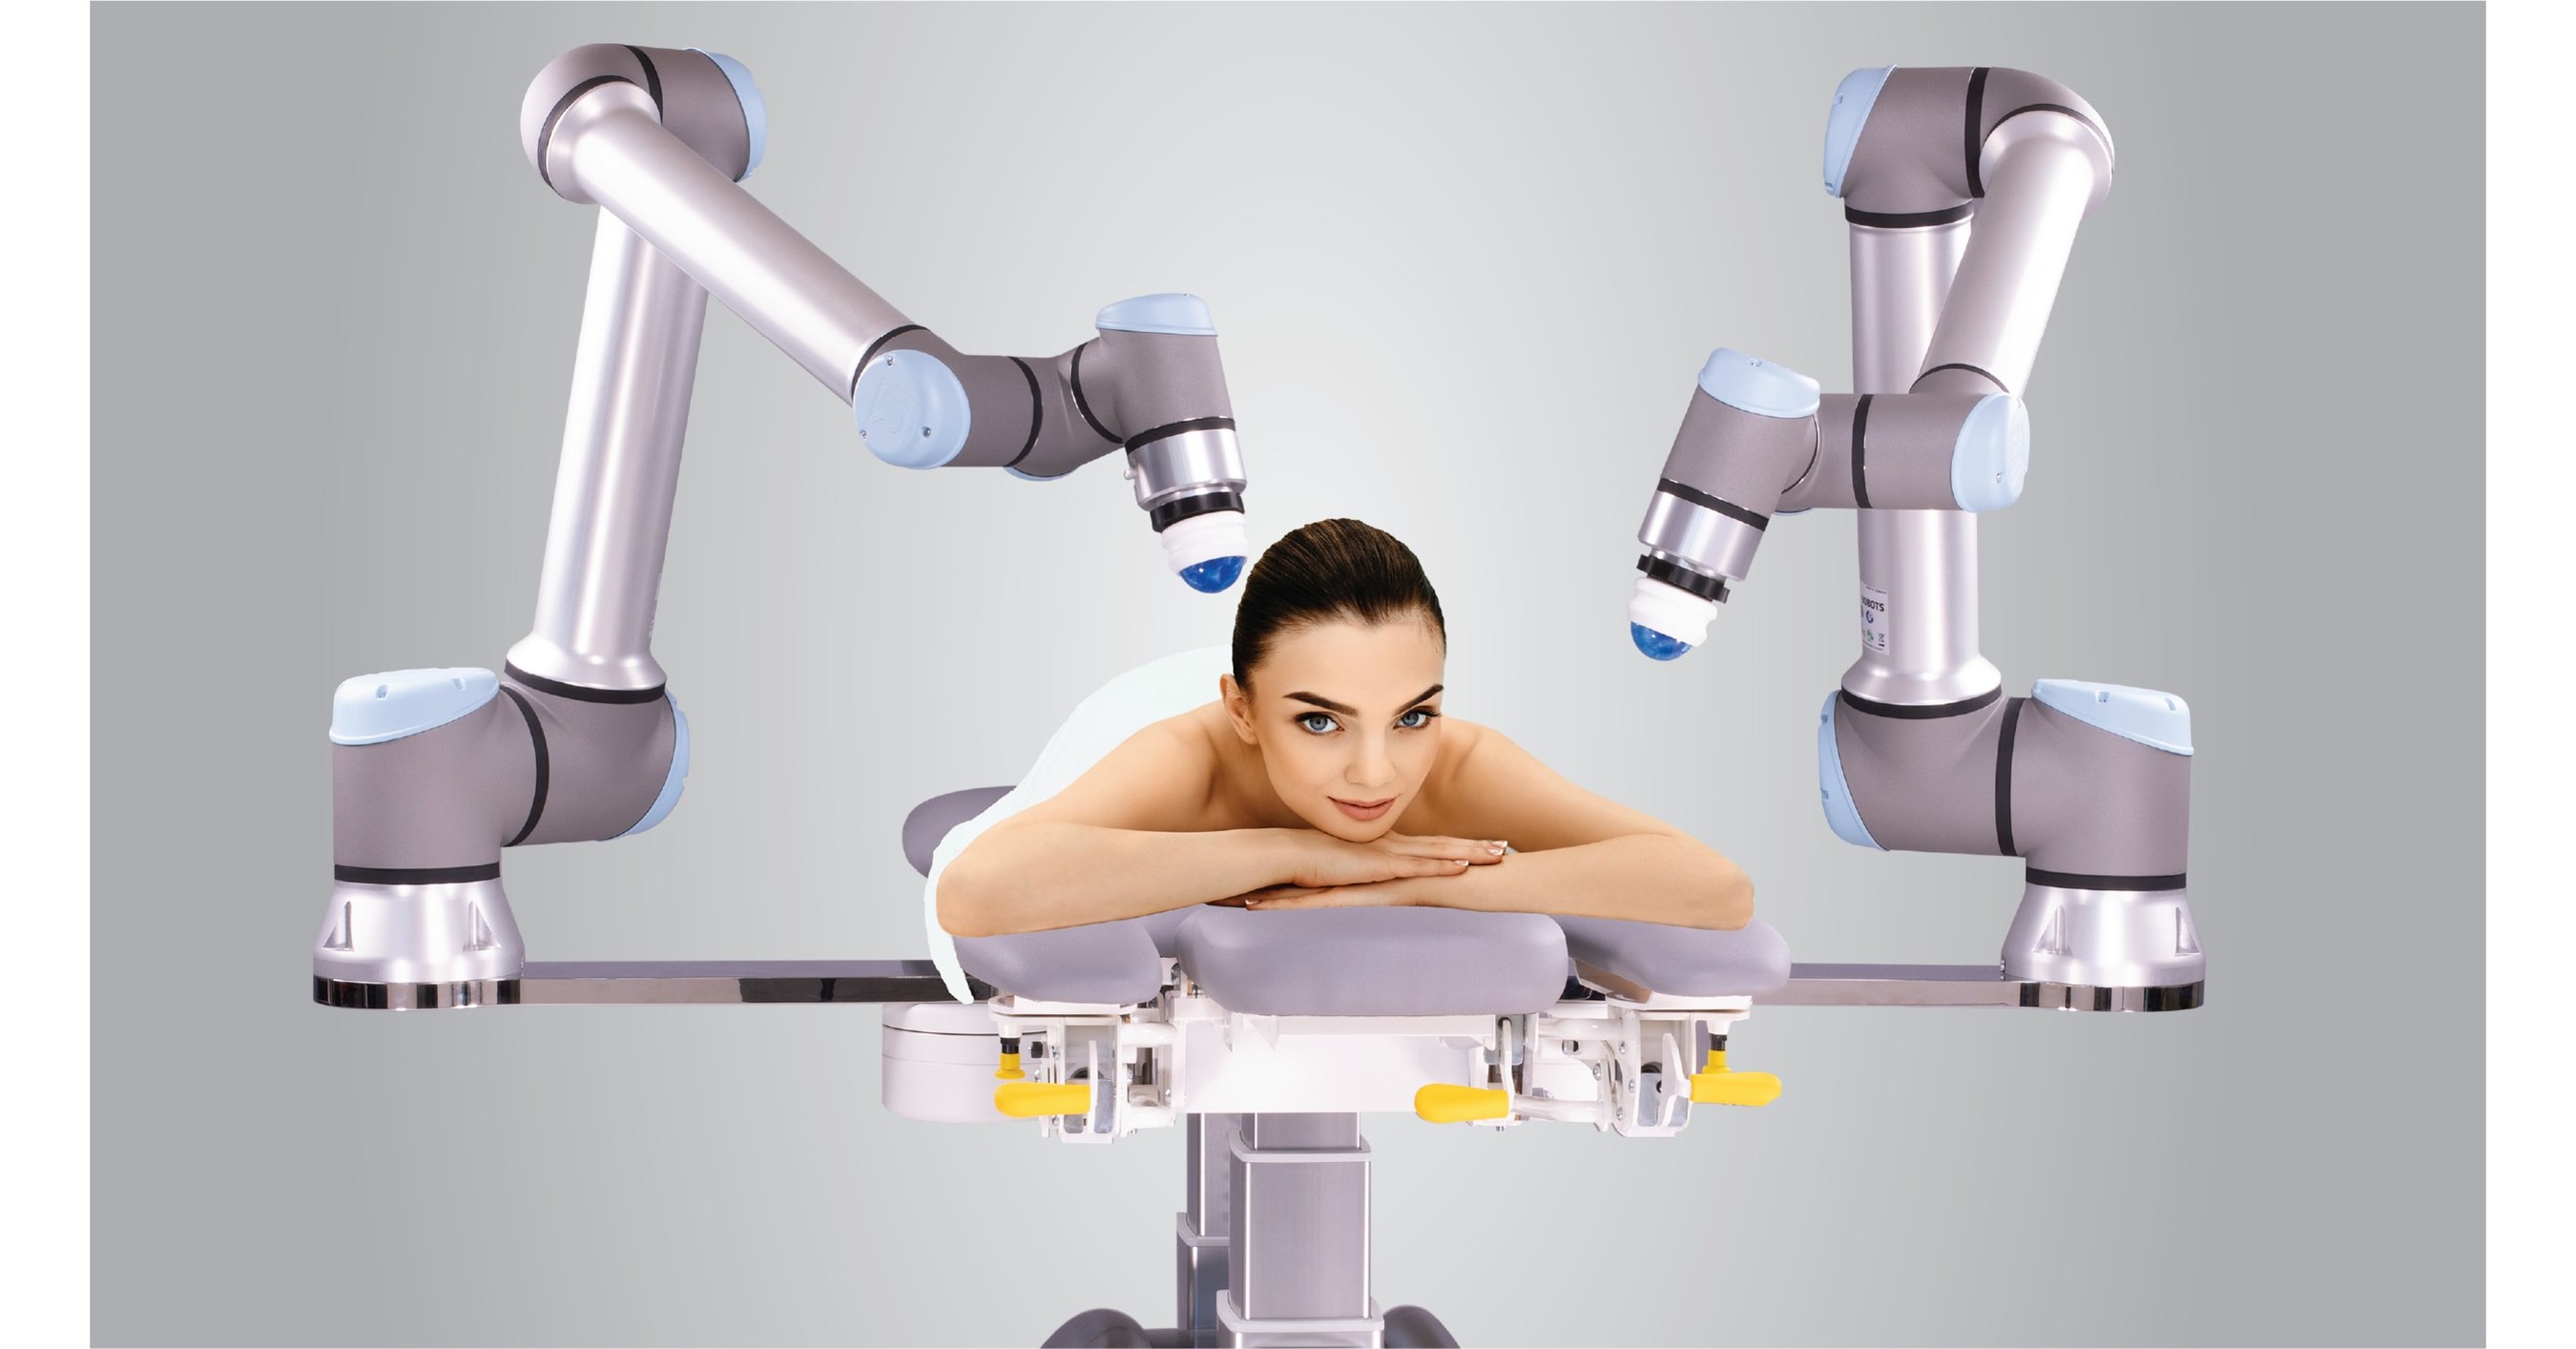 Робот массажист машинка. Продукция роботы Сиасан. Робот массажист для спины китайский в виде человека.